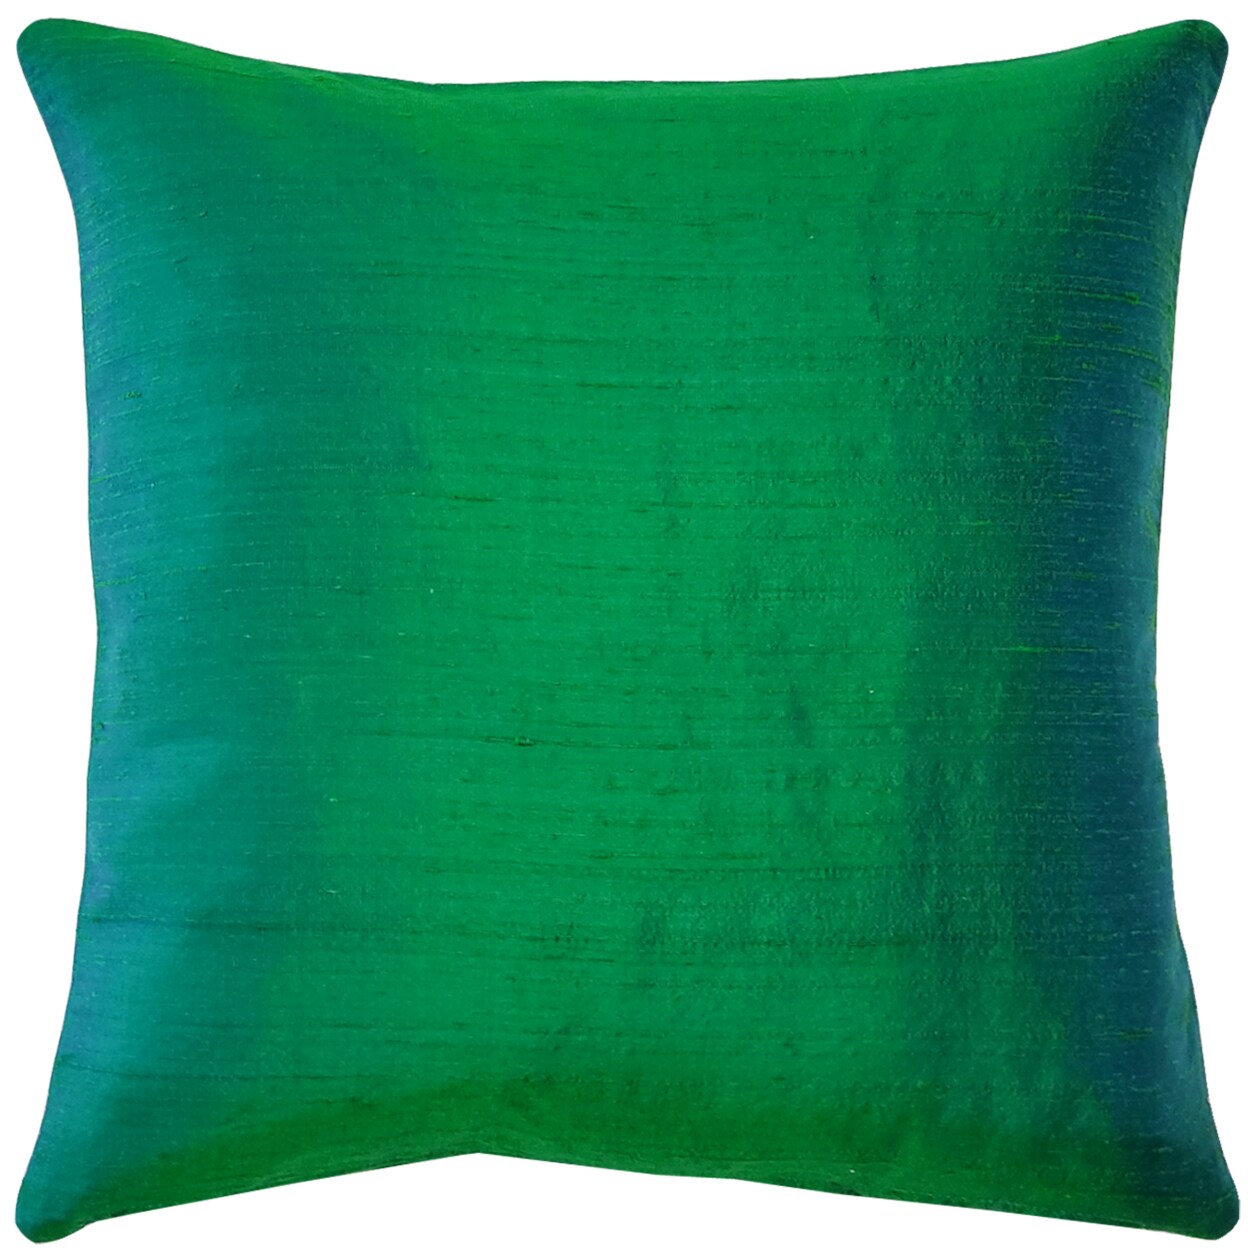 Sankara Silk Throw Pillows 18x18